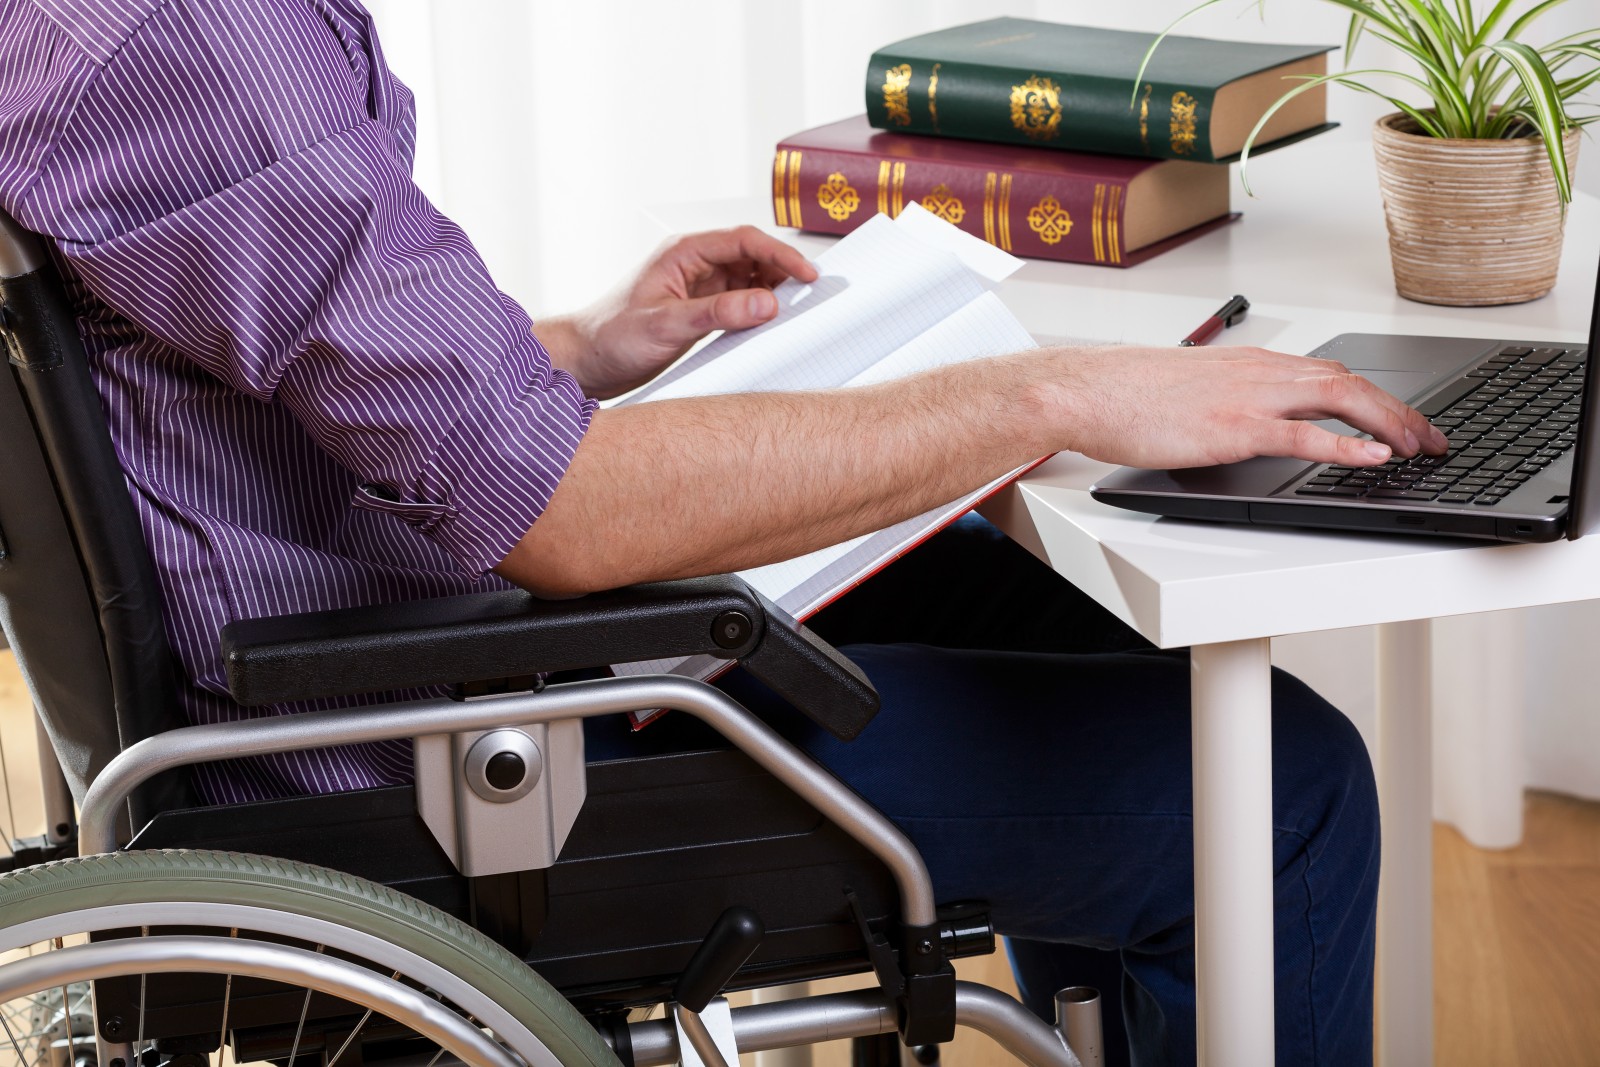 Реабилитация группы инвалидности. Трудоустройство инвалидов. Инвалидность. Профессиональная реабилитация инвалидов. Рабочие места для инвалидов.